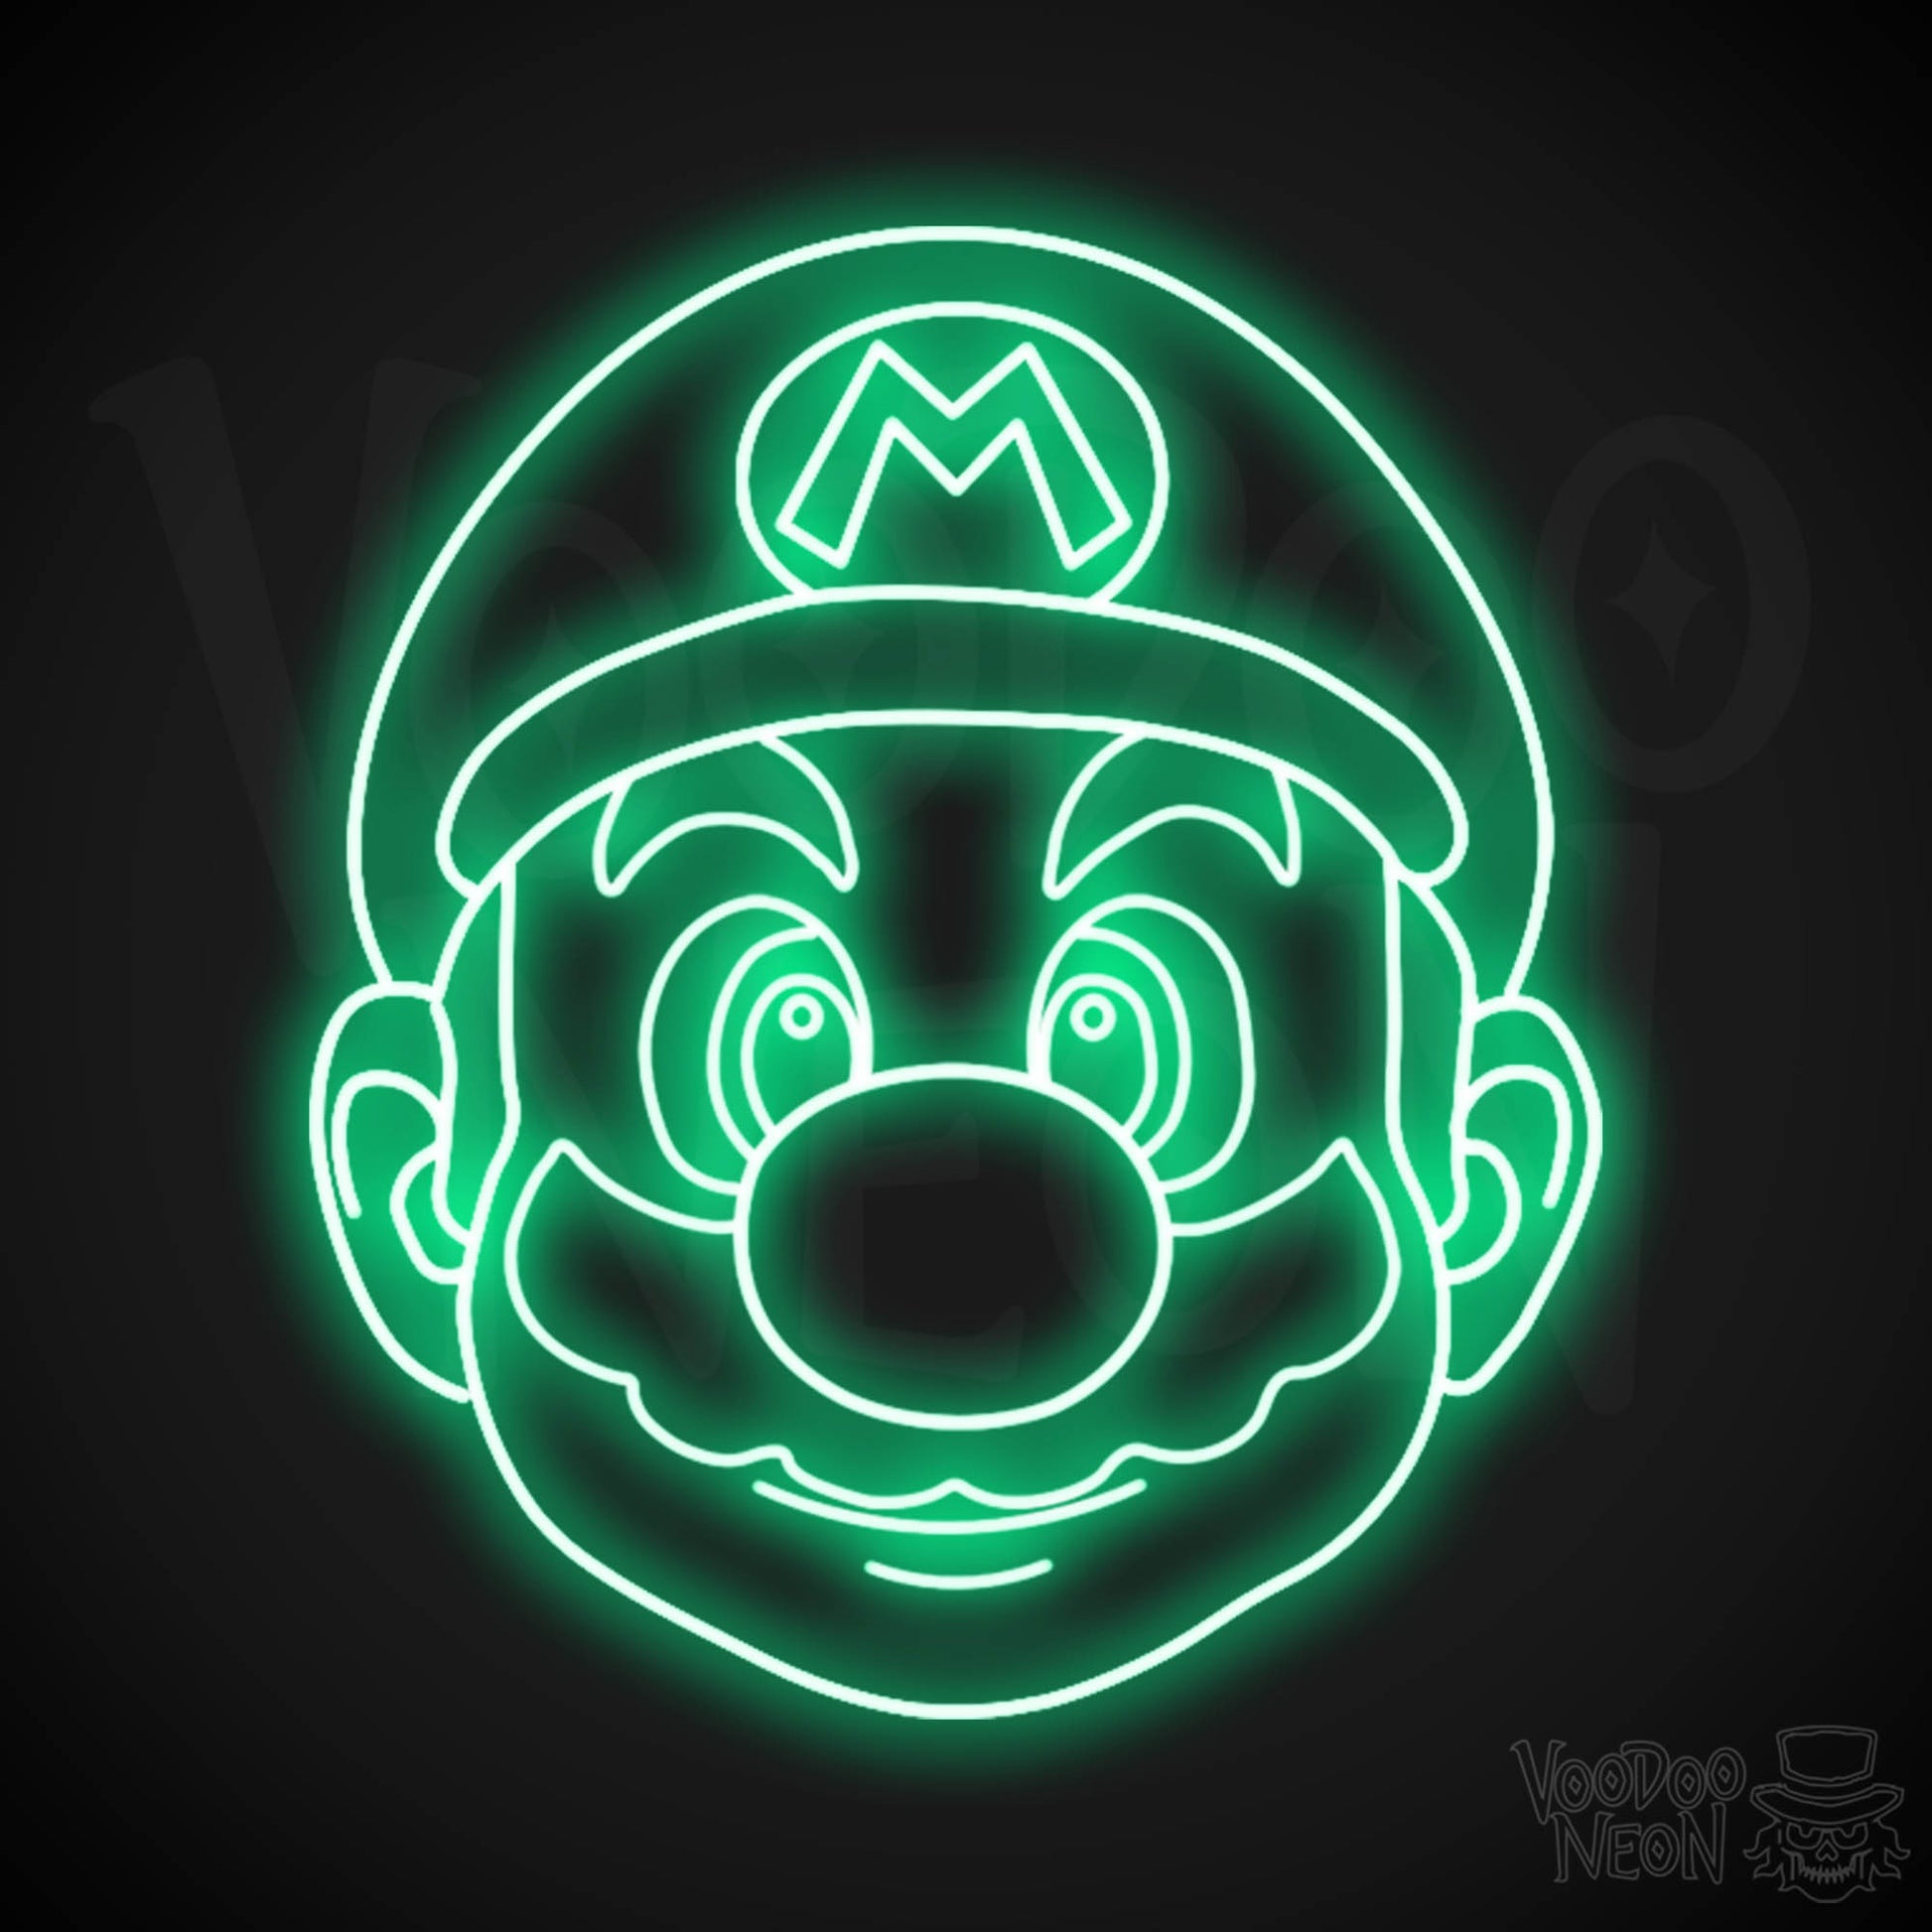 Mario Neon Sign - Mario Sign - Mario Wall Art - LED Neon Wall Art - Color Green